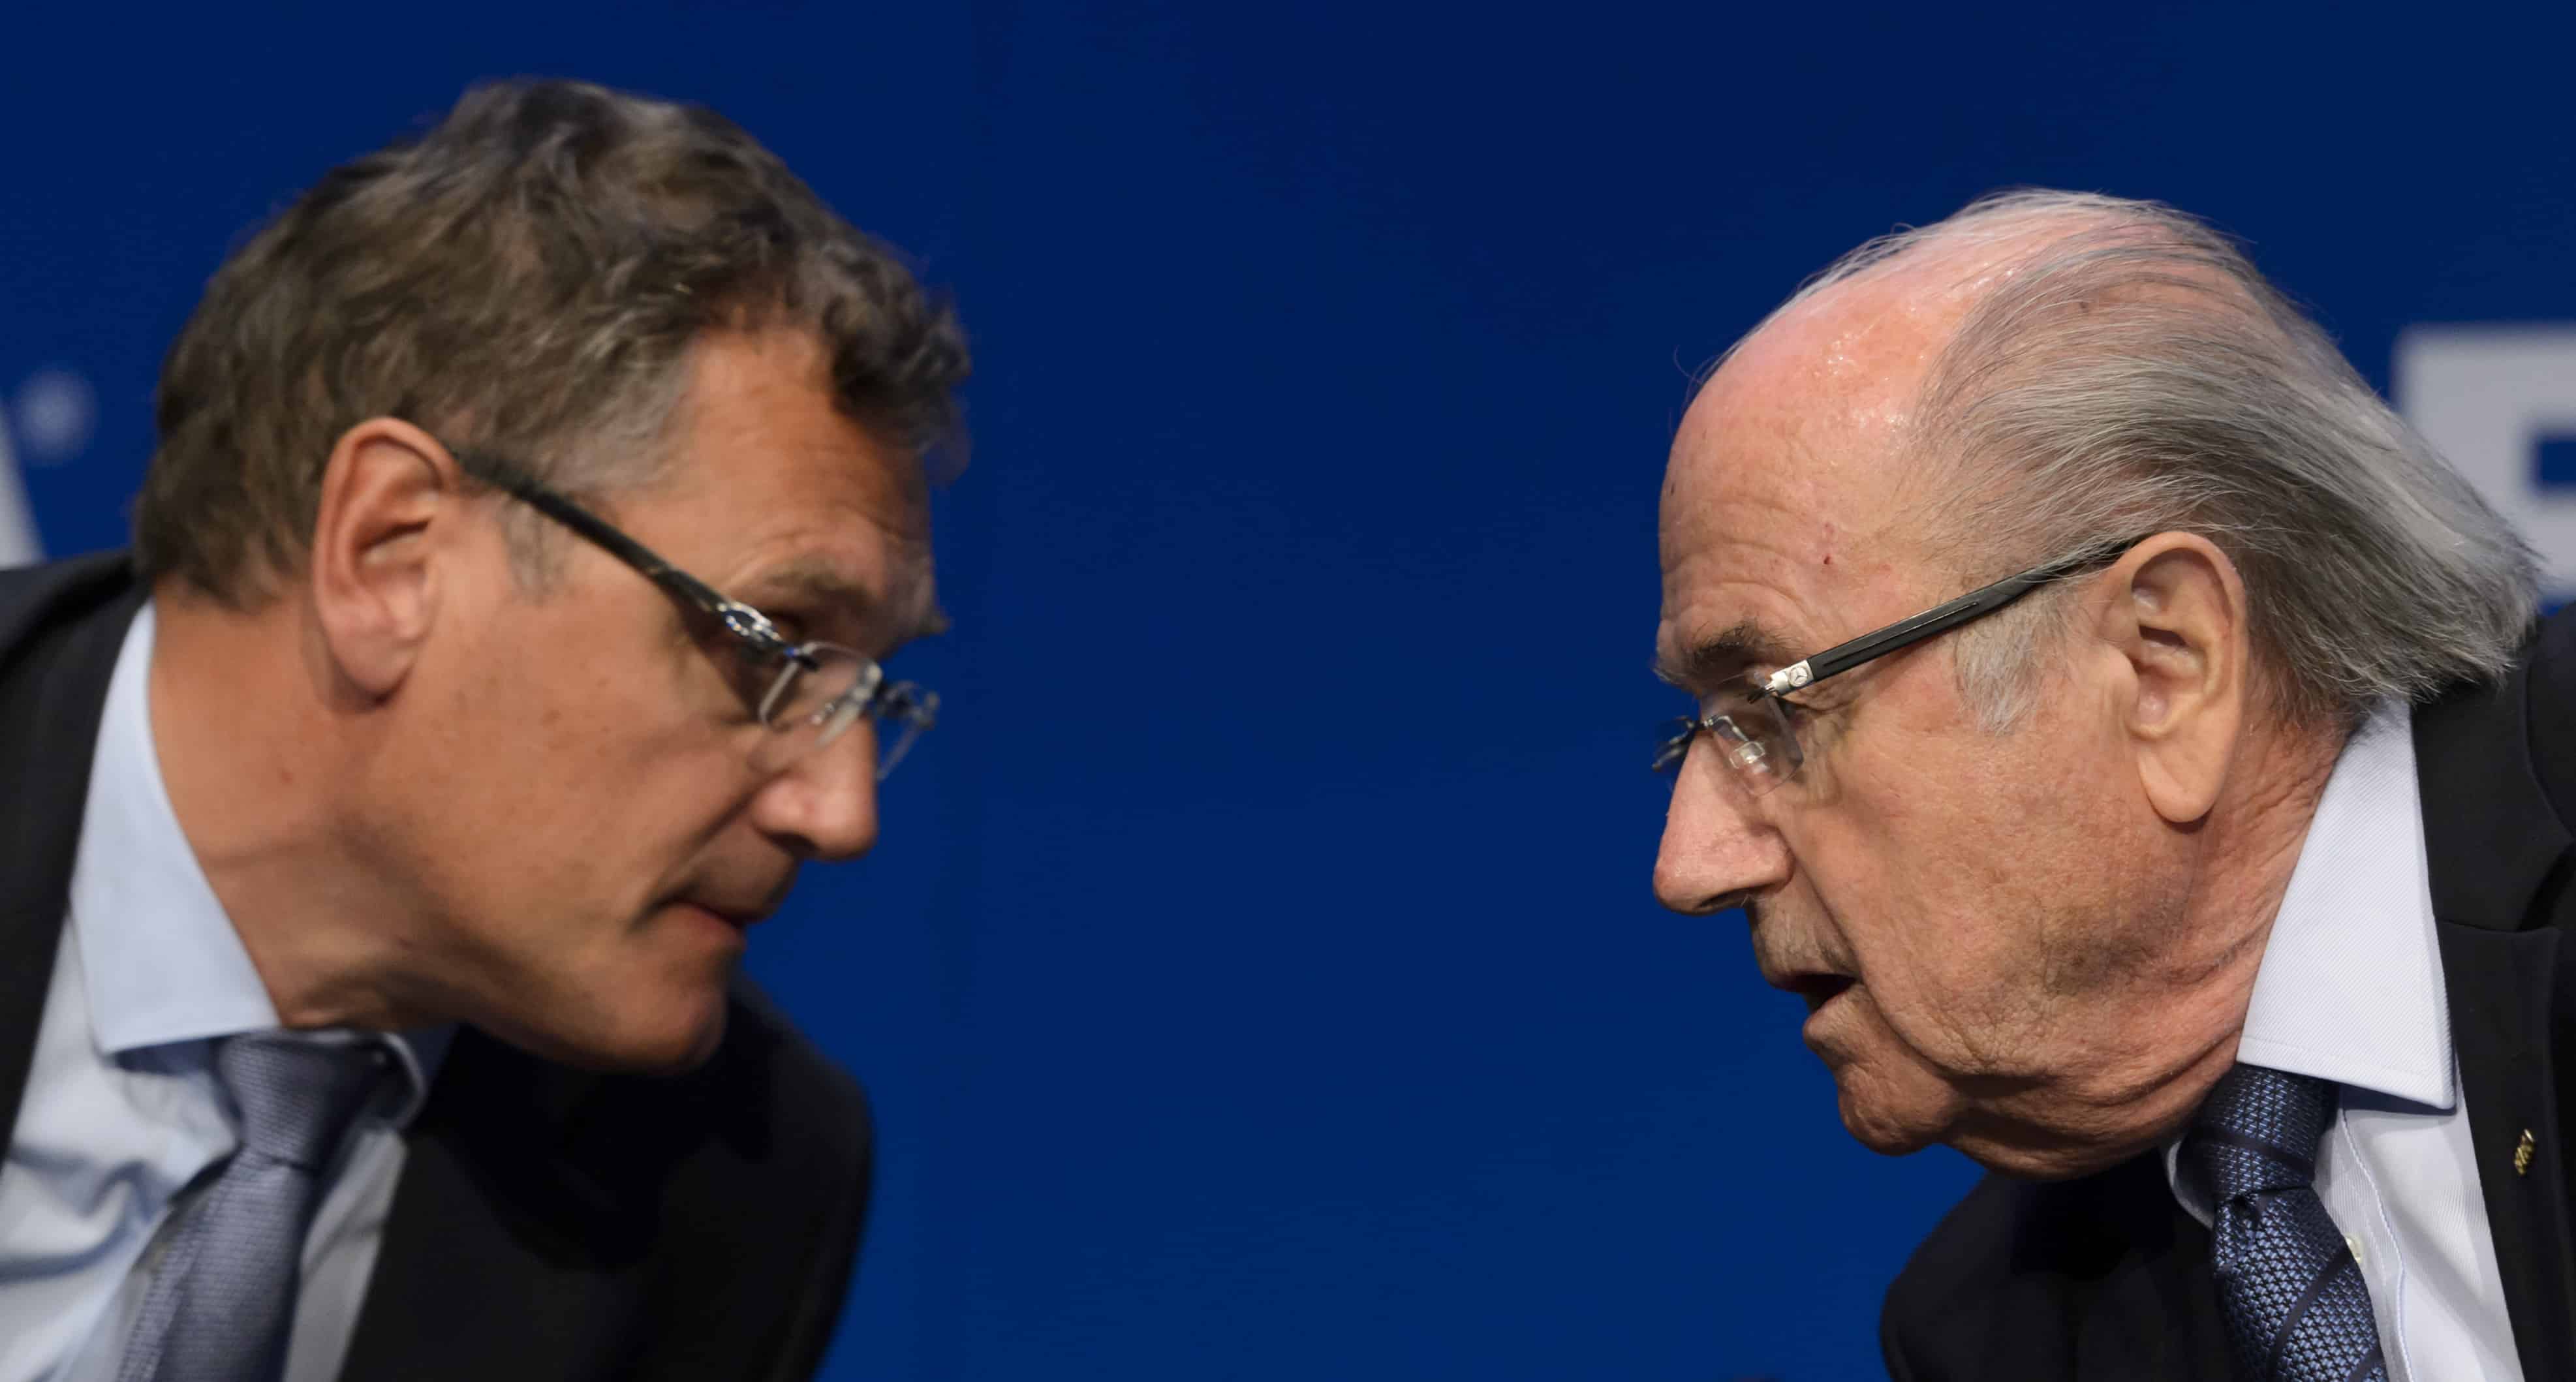 FIFA President Sepp Blatter, right, speaks with FIFA Secretary General Jerome Valcke.